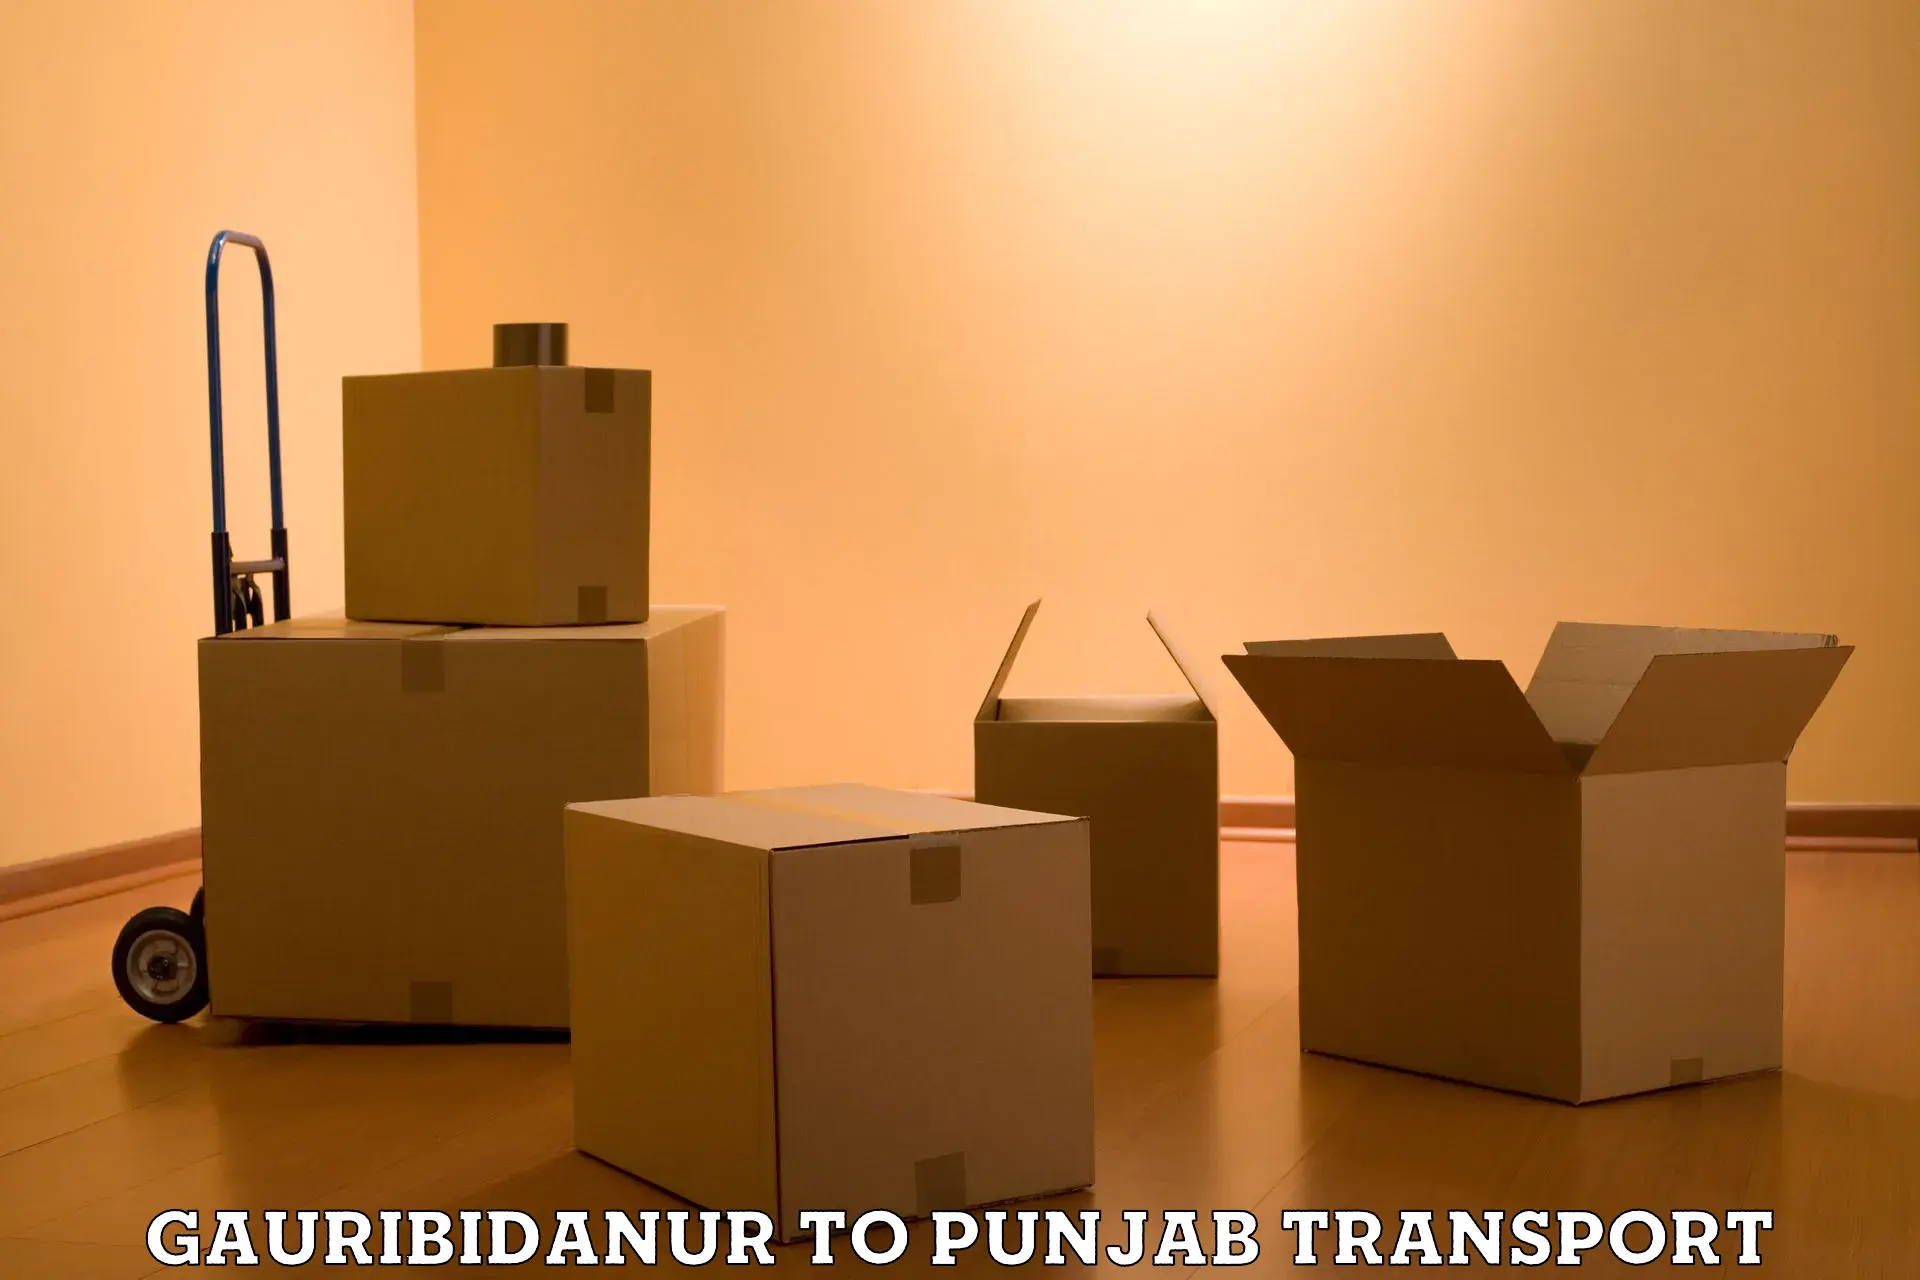 Nationwide transport services Gauribidanur to Jalandhar